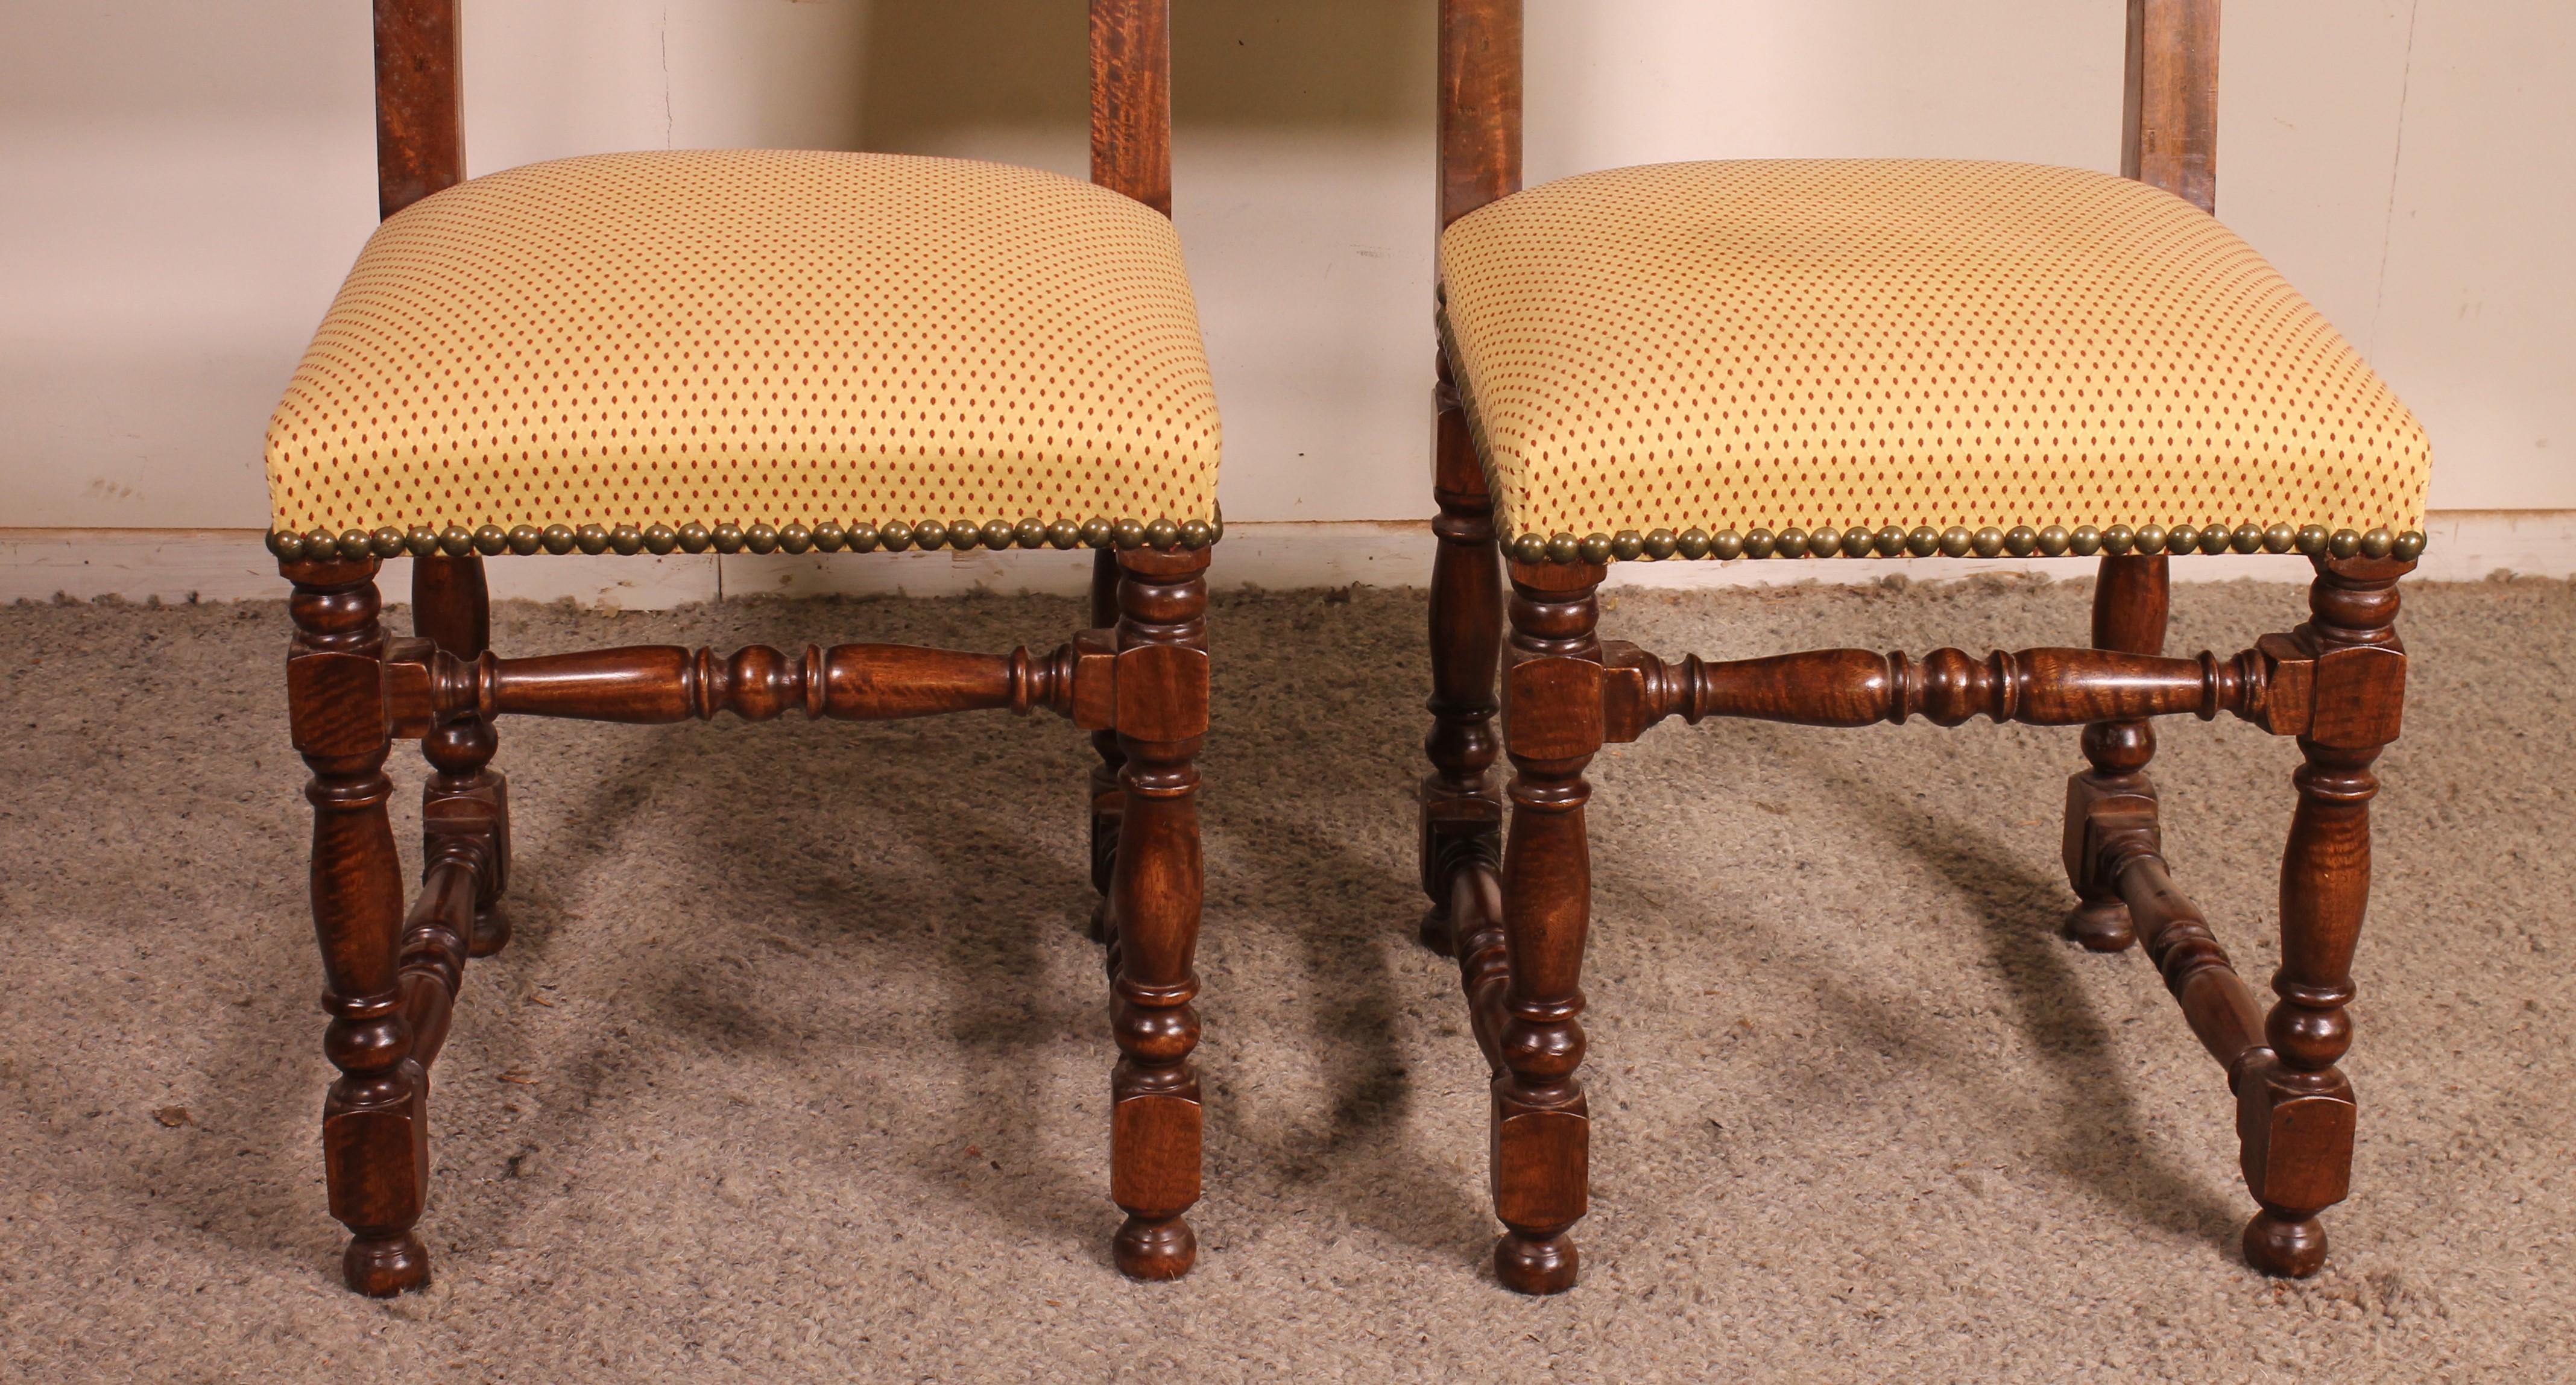 belle paire de 2  Chaises en noyer de style Louis XIII (20 siècle) 
Les chaises proviennent de France et sont en parfait état. Les chaises ont été vérifiées, repolies et retapissées par notre tapissier.

Les chaises sont très confortables et ont une